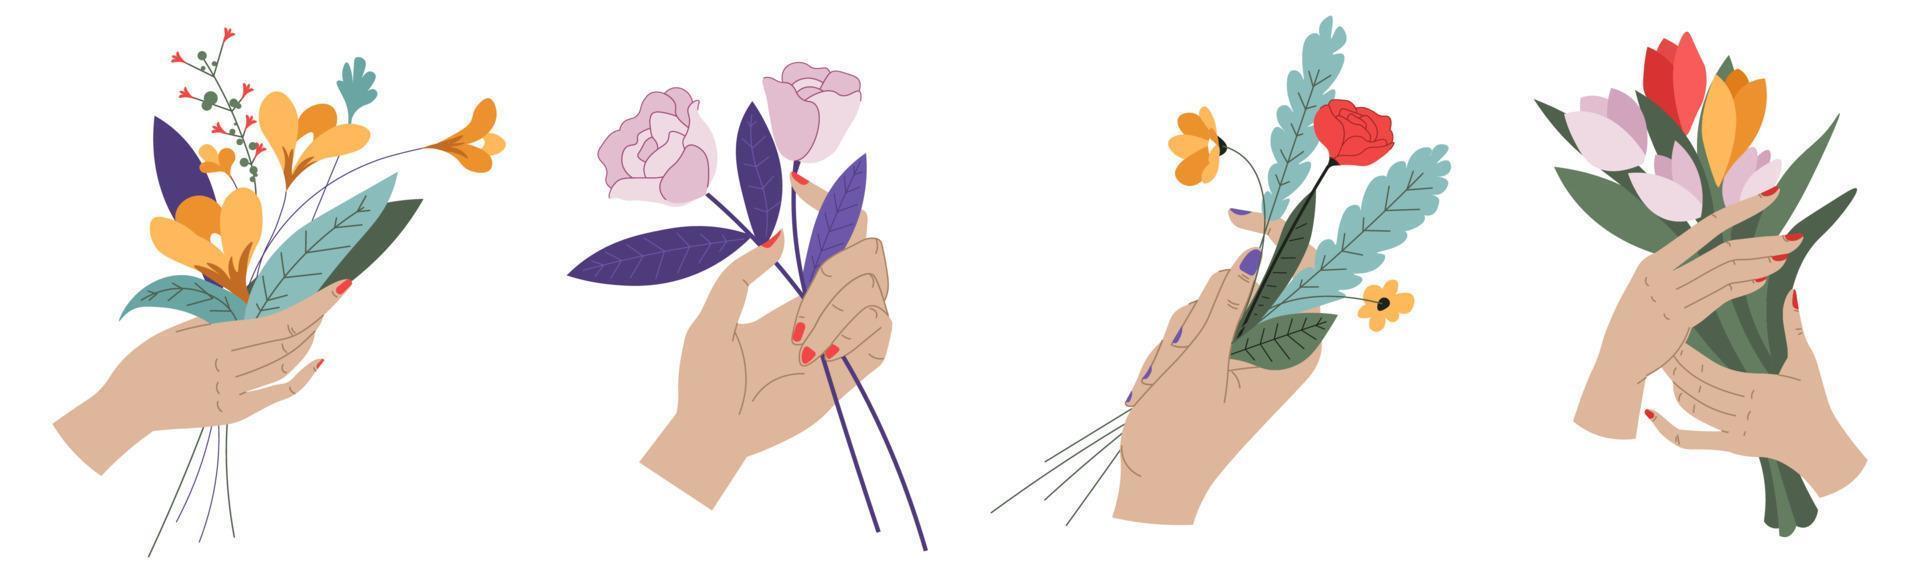 manos femeninas sosteniendo flores y ramos de flores vector